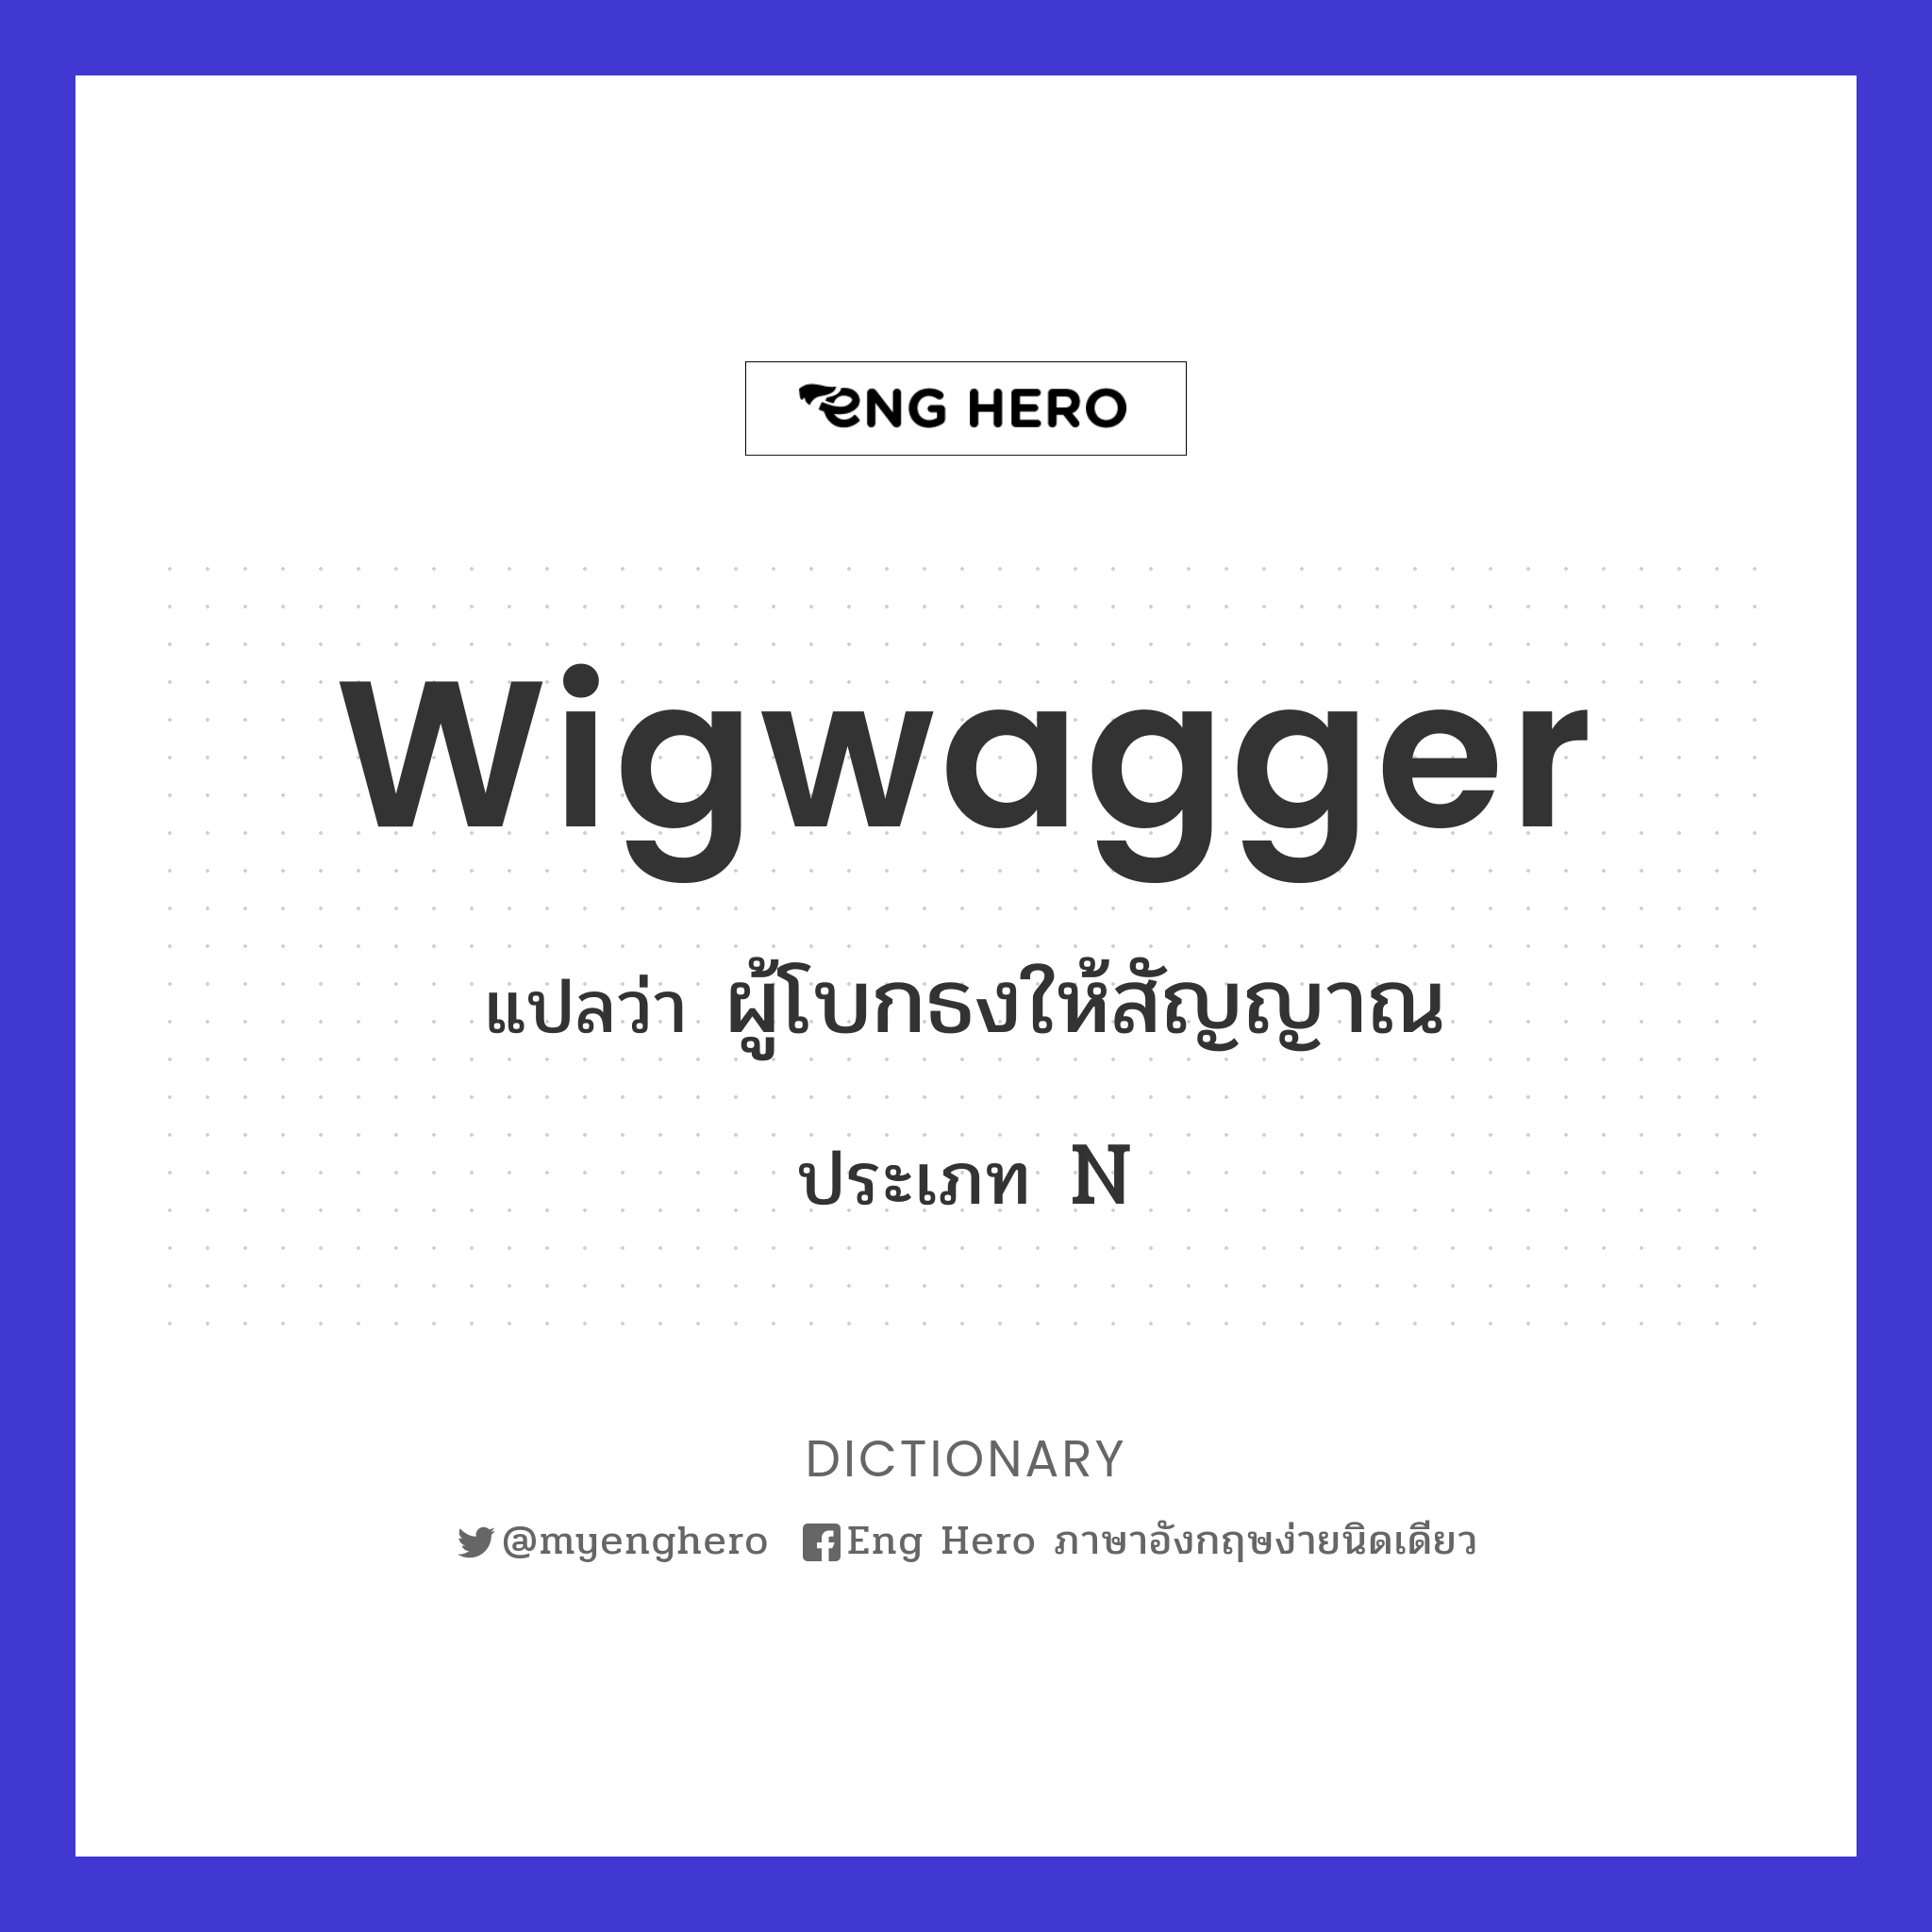 wigwagger